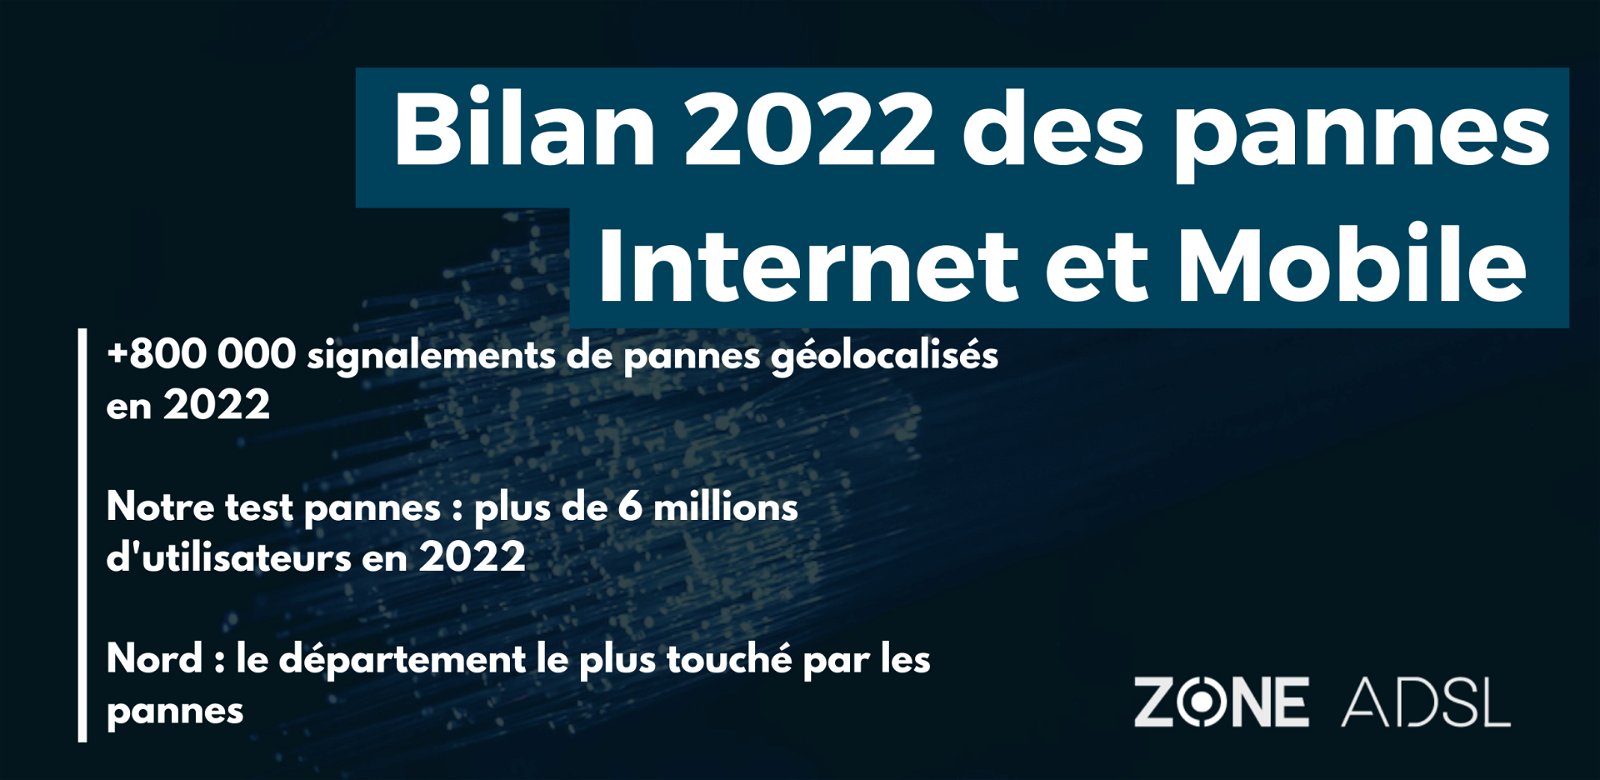 Bilan 2022 des pannes Internet et Mobile